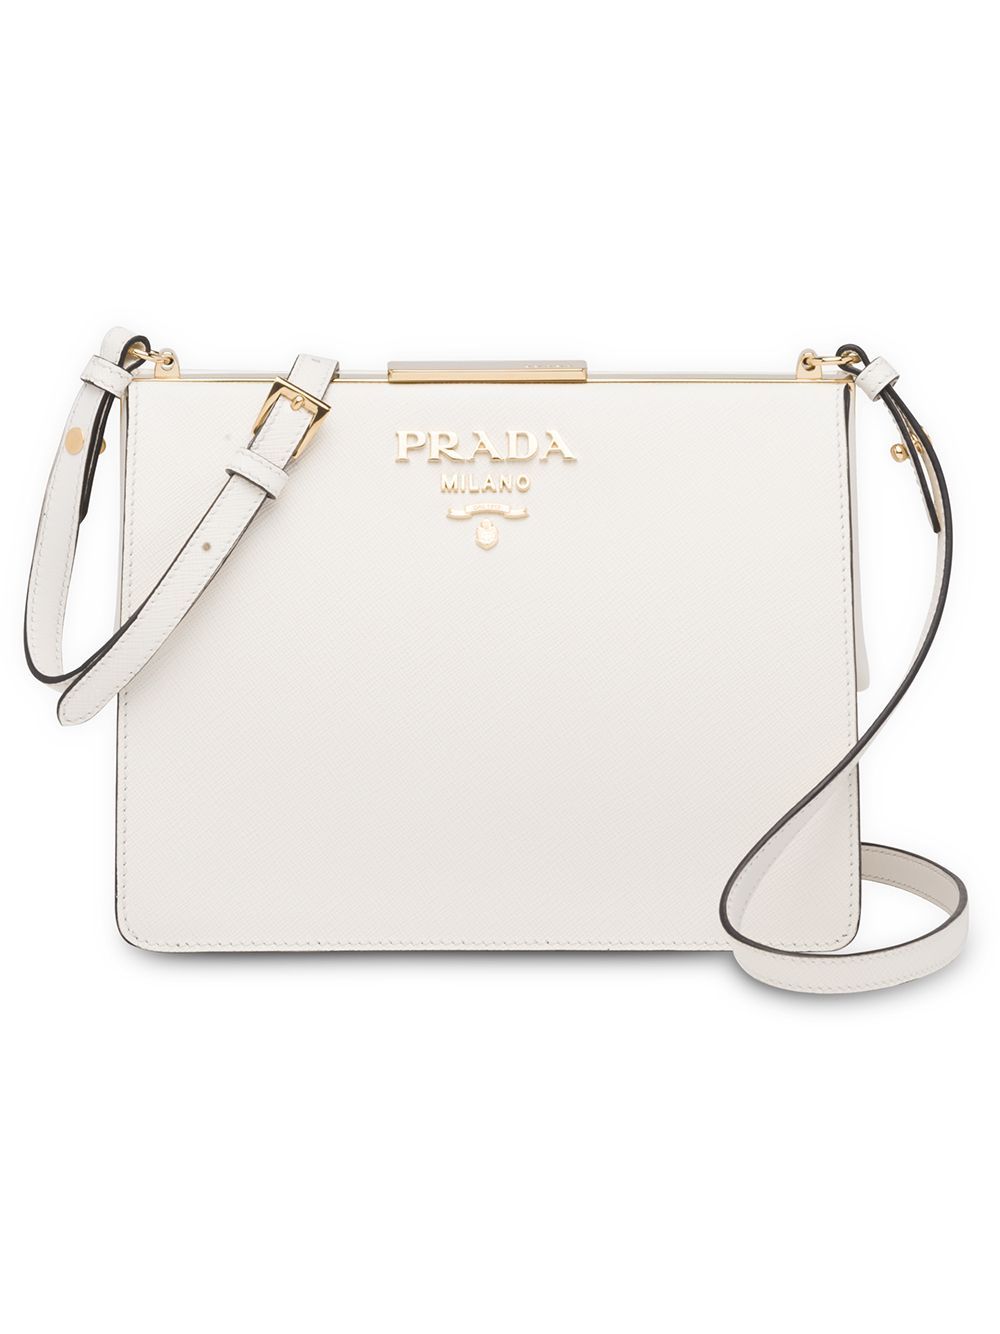 Prada light frame shoulder bag - White | FarFetch US